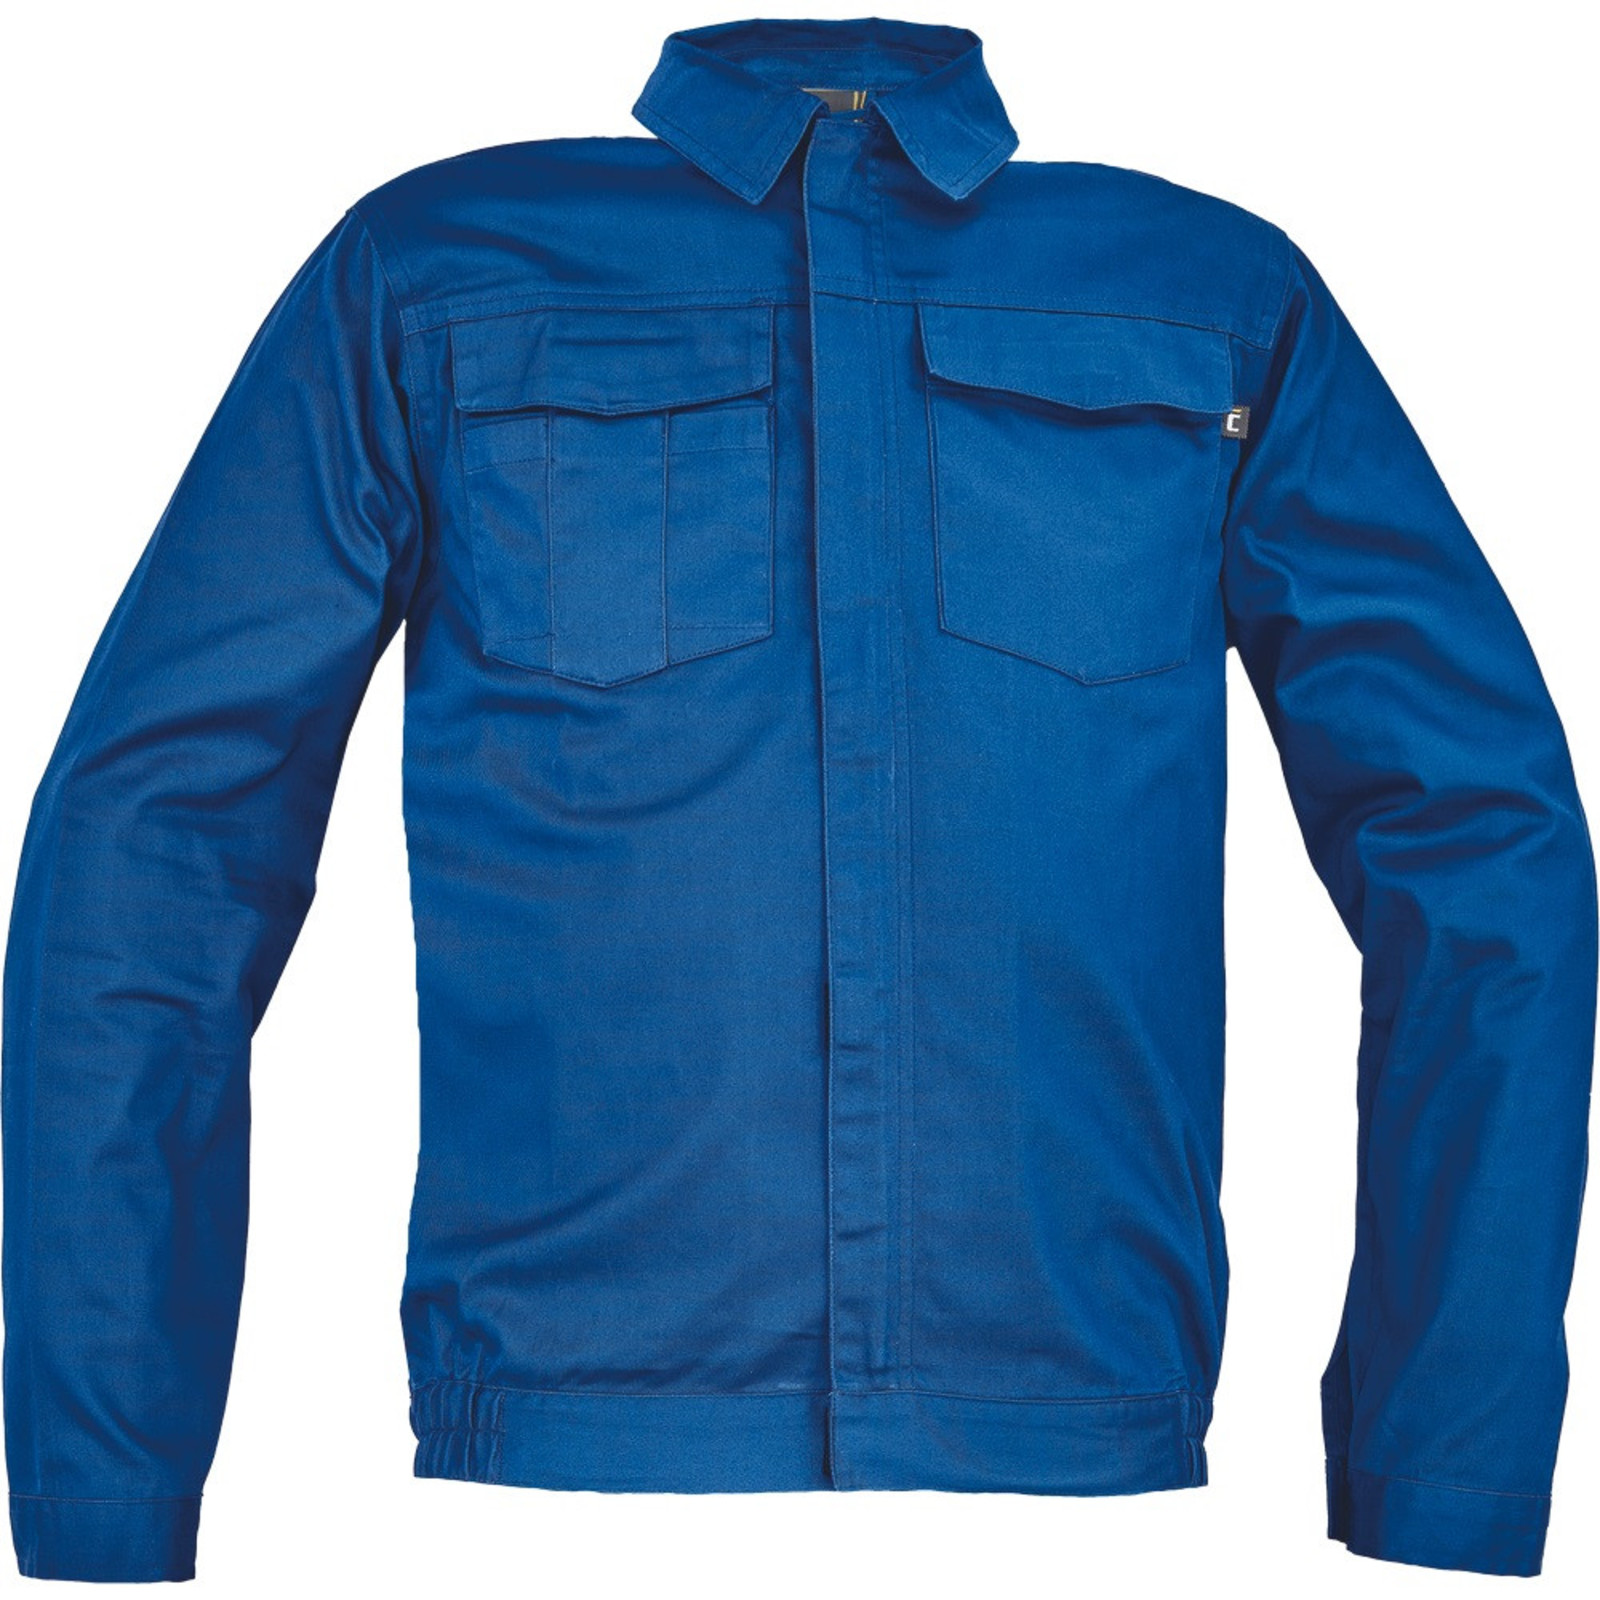 Pánska ľahká pracovná bunda Cerva Ciudades Basic Zaragoza - veľkosť: 56, farba: royal blue